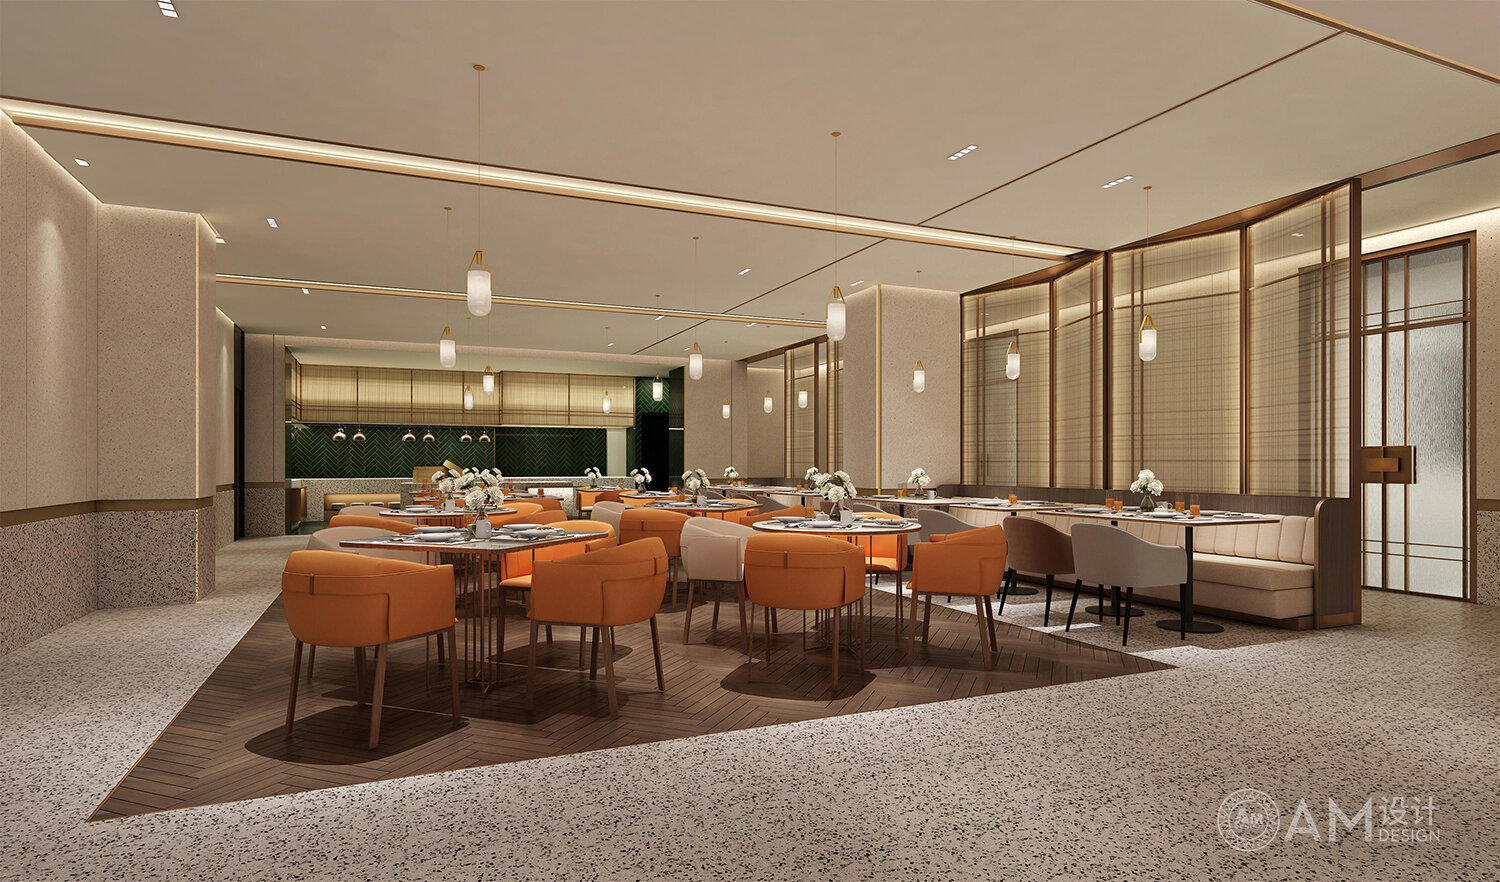 AM | Aobei corporate restaurant dining area design